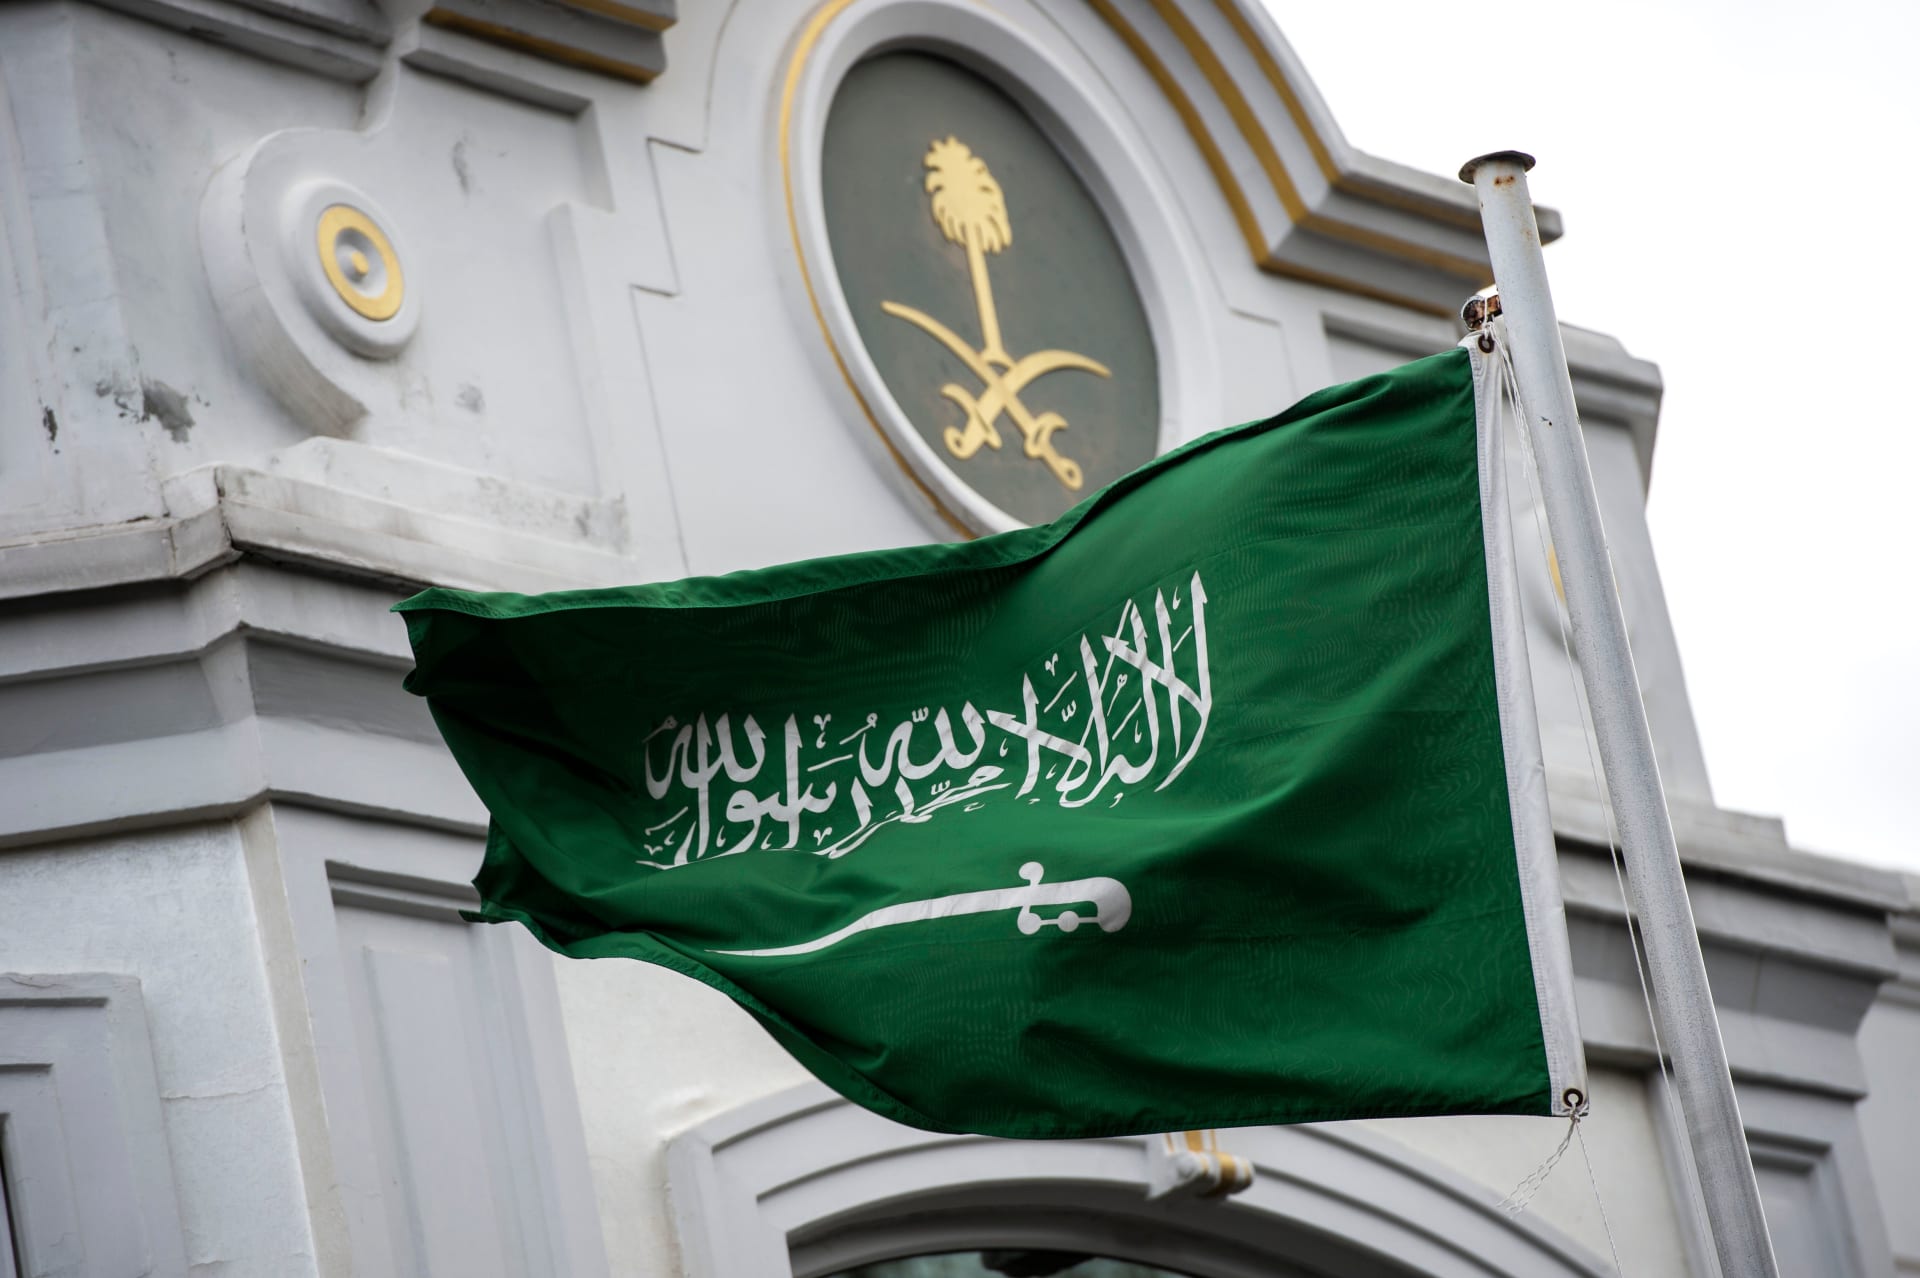 حتى 10 ذي الحجة … المملكة السعودية تسمح بدخول حاملي تلك التأشيرات إلى جدة والمدينة